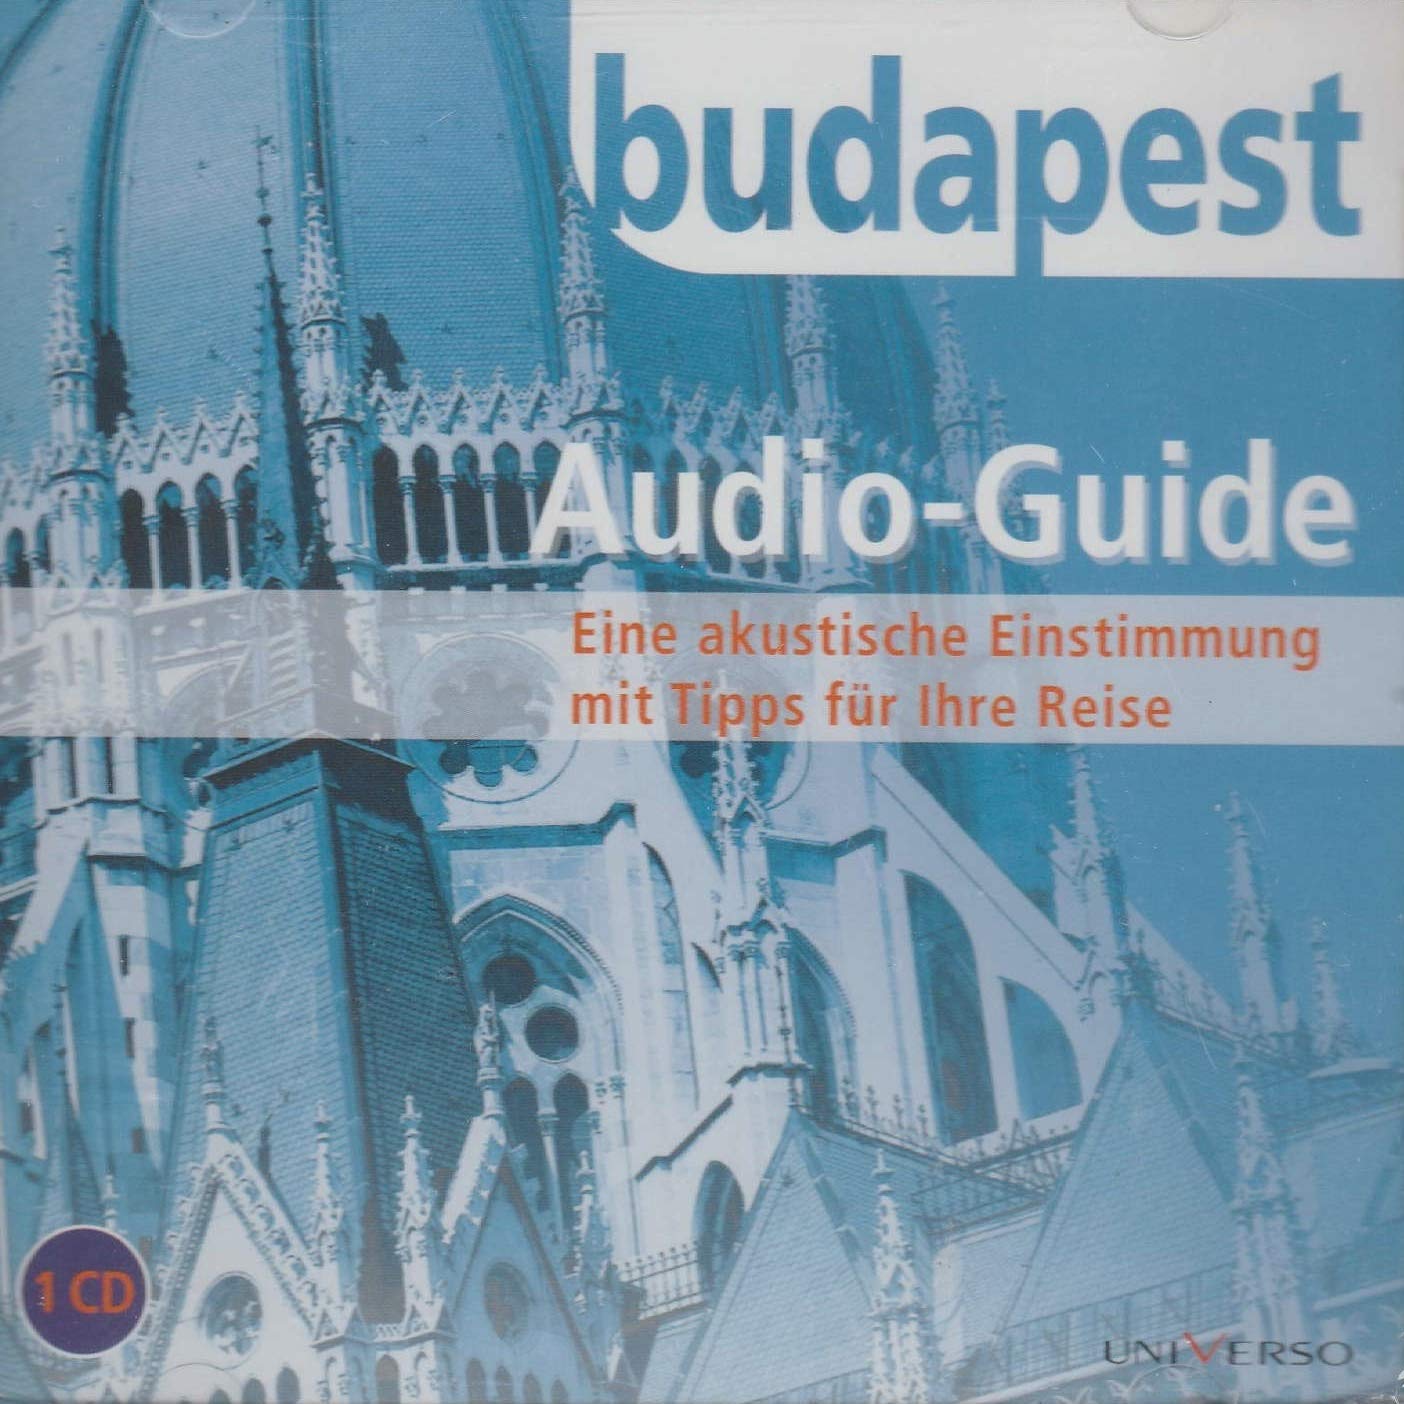 Hörbuch Audio-Guide: eine akustische Einstimmung mit Tipps für Ihre Reise